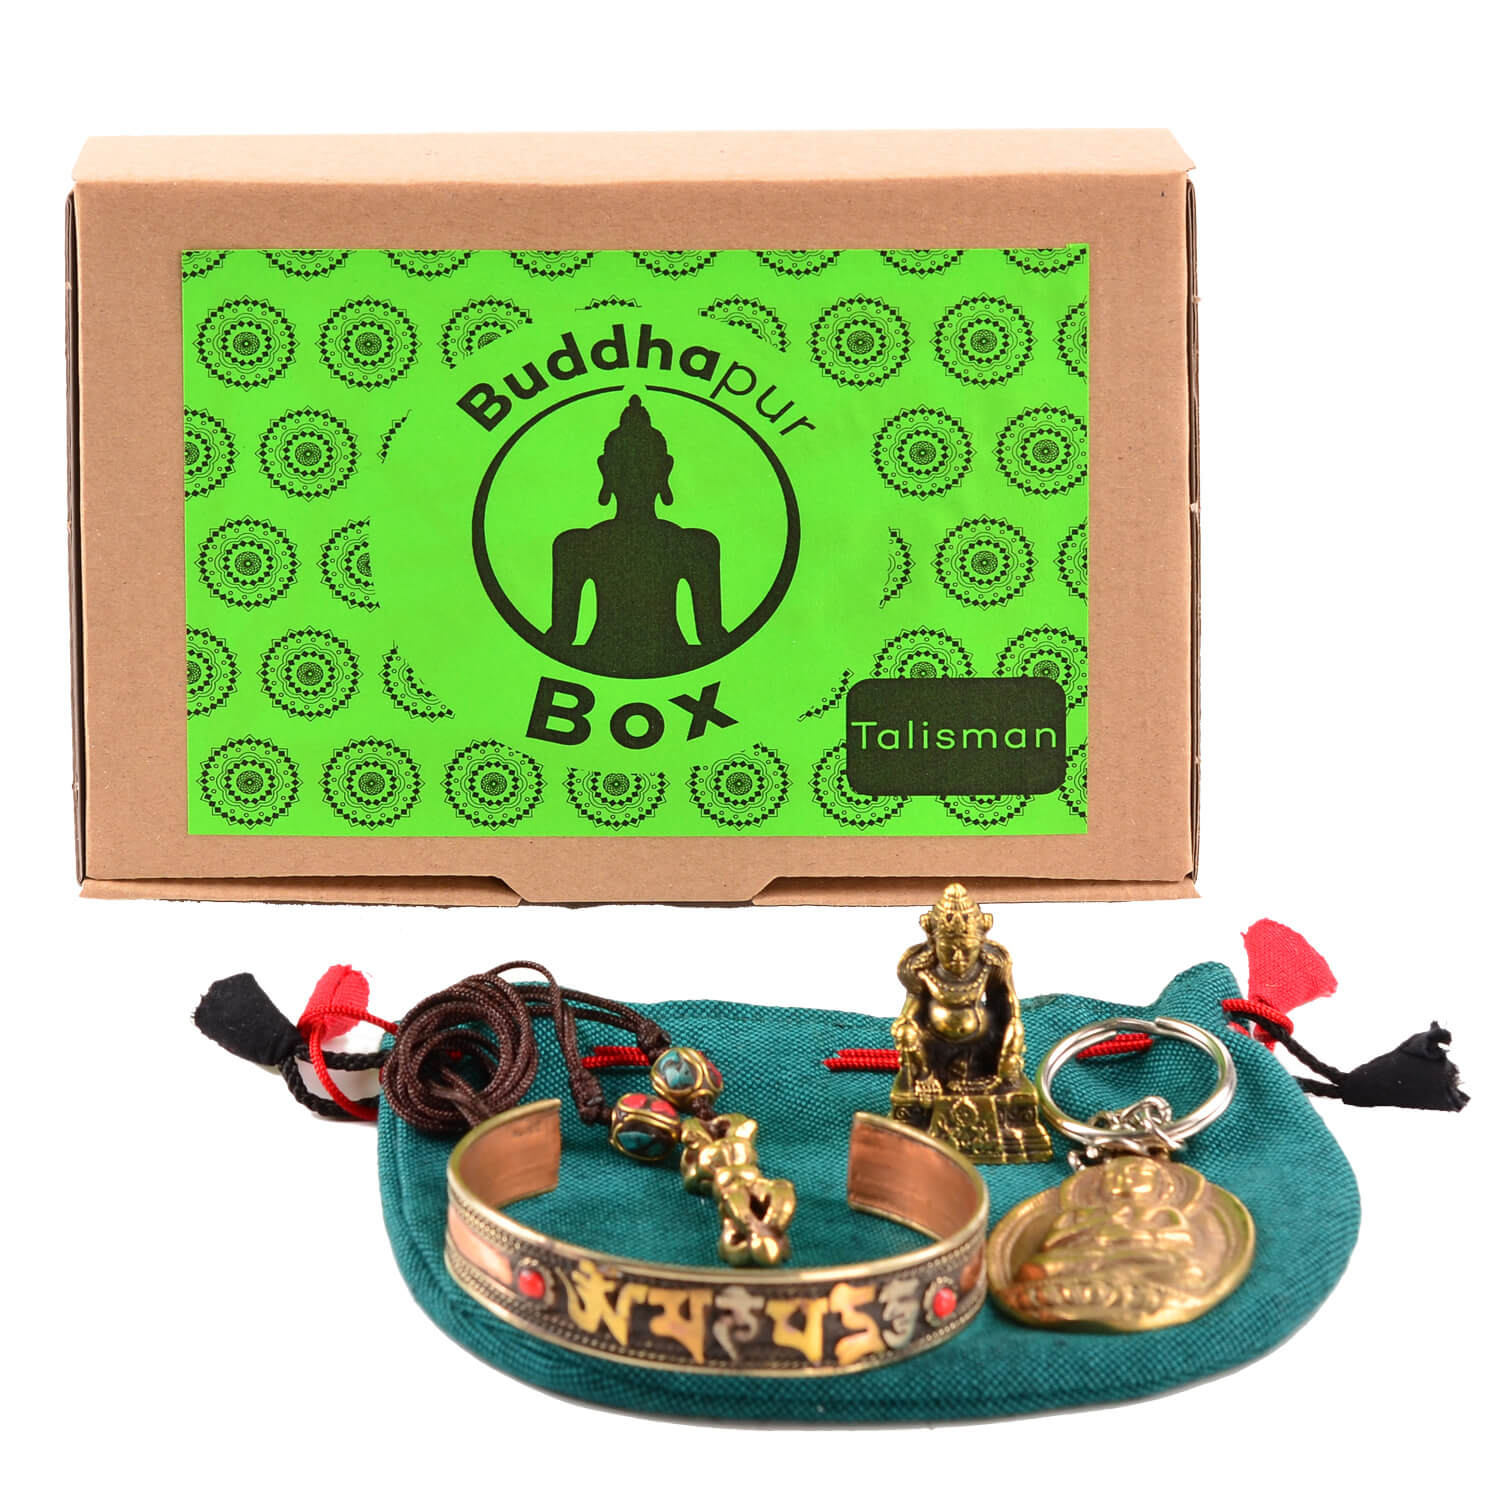 Buddhapur Box Talisman: Inhalt vor Verpackung